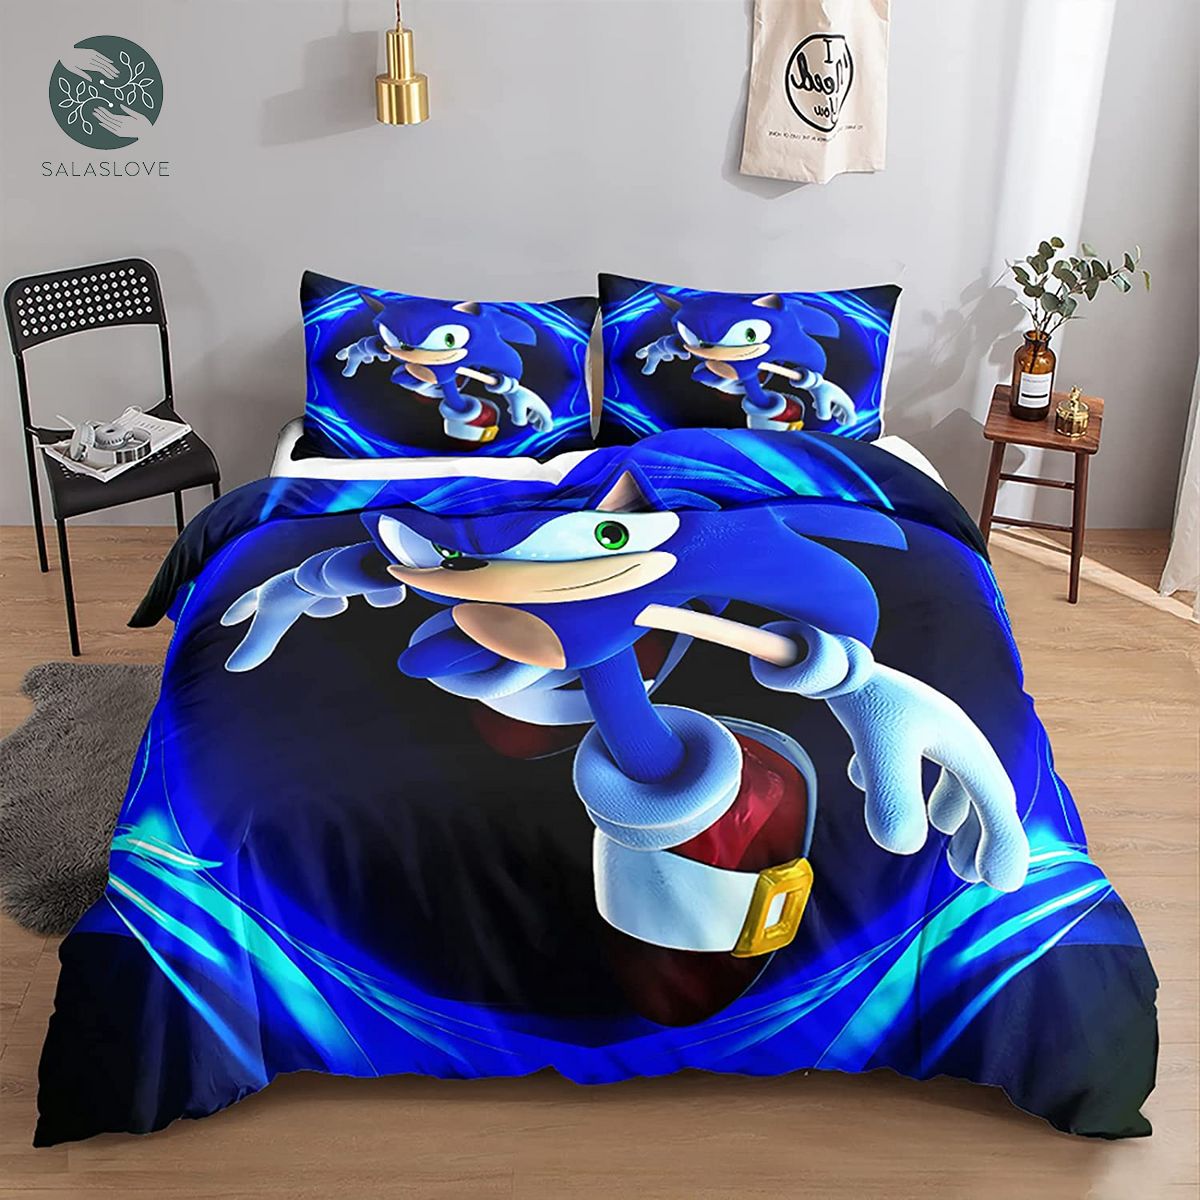 Sonic Bedding Set Anime Cartoon Duvet Cover Set